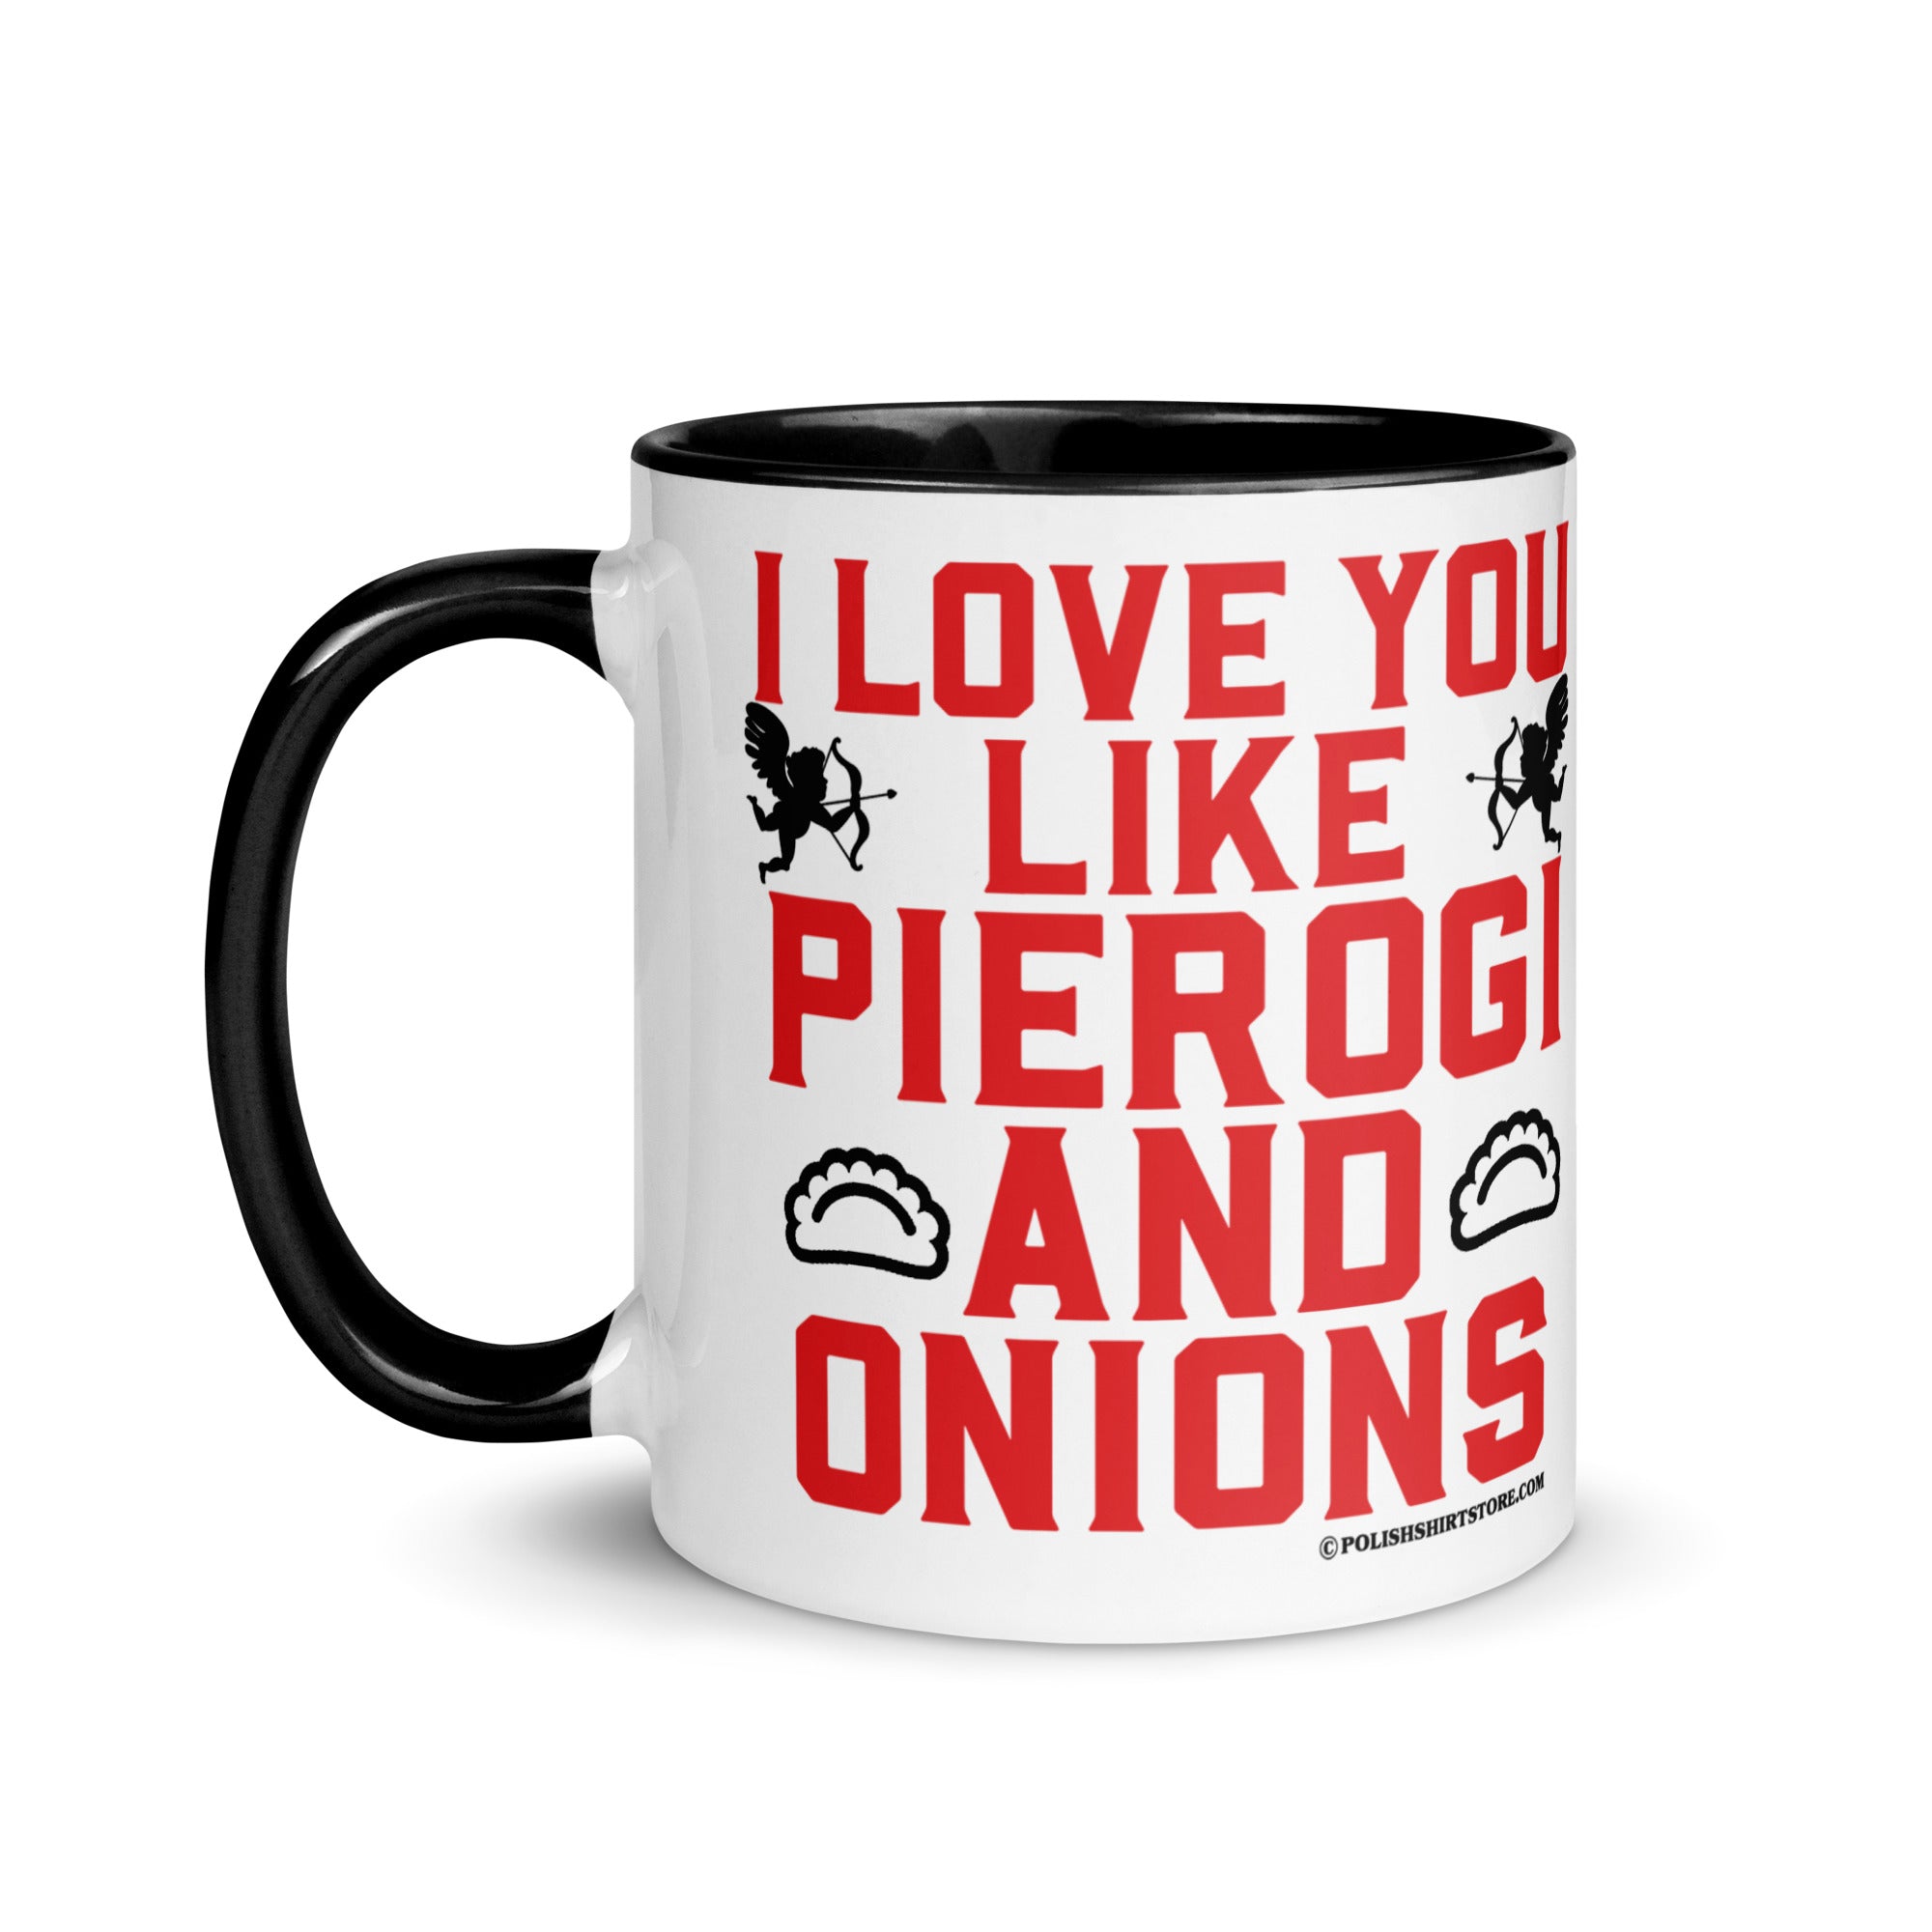 I Love You Like Pierogi And Onions Coffee Mug with Color Inside